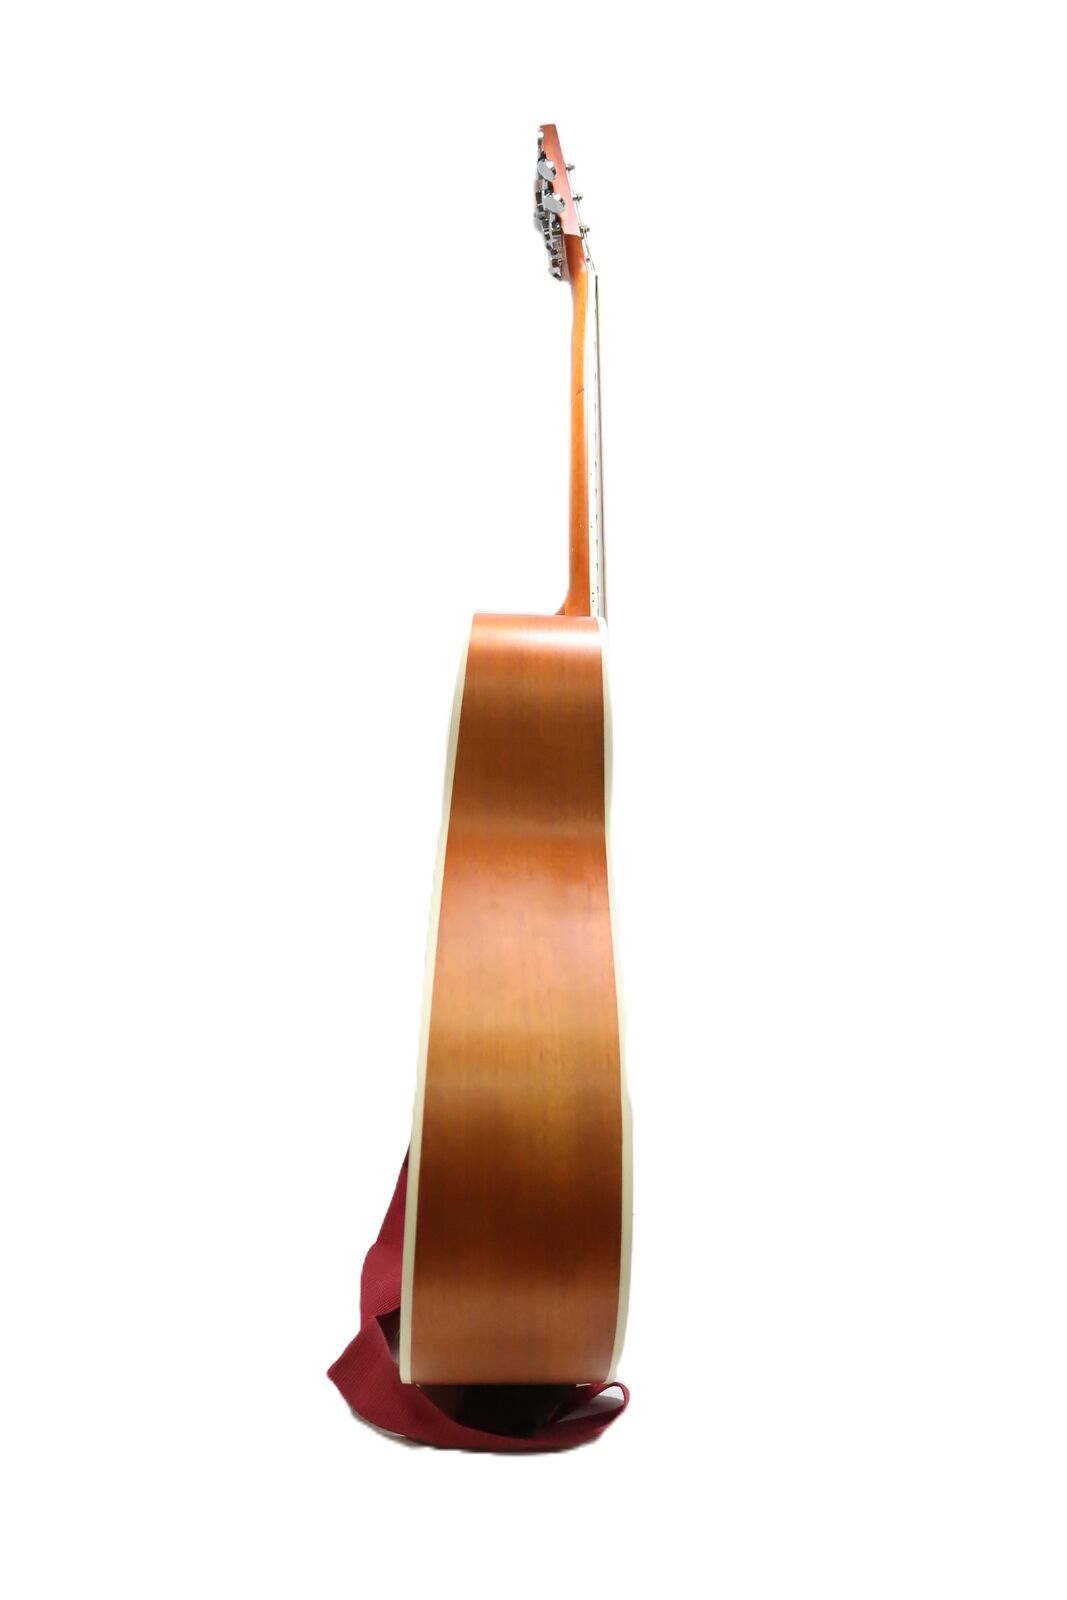 Nashville Guitar Works D10 Acoustic Guitar 9788 7